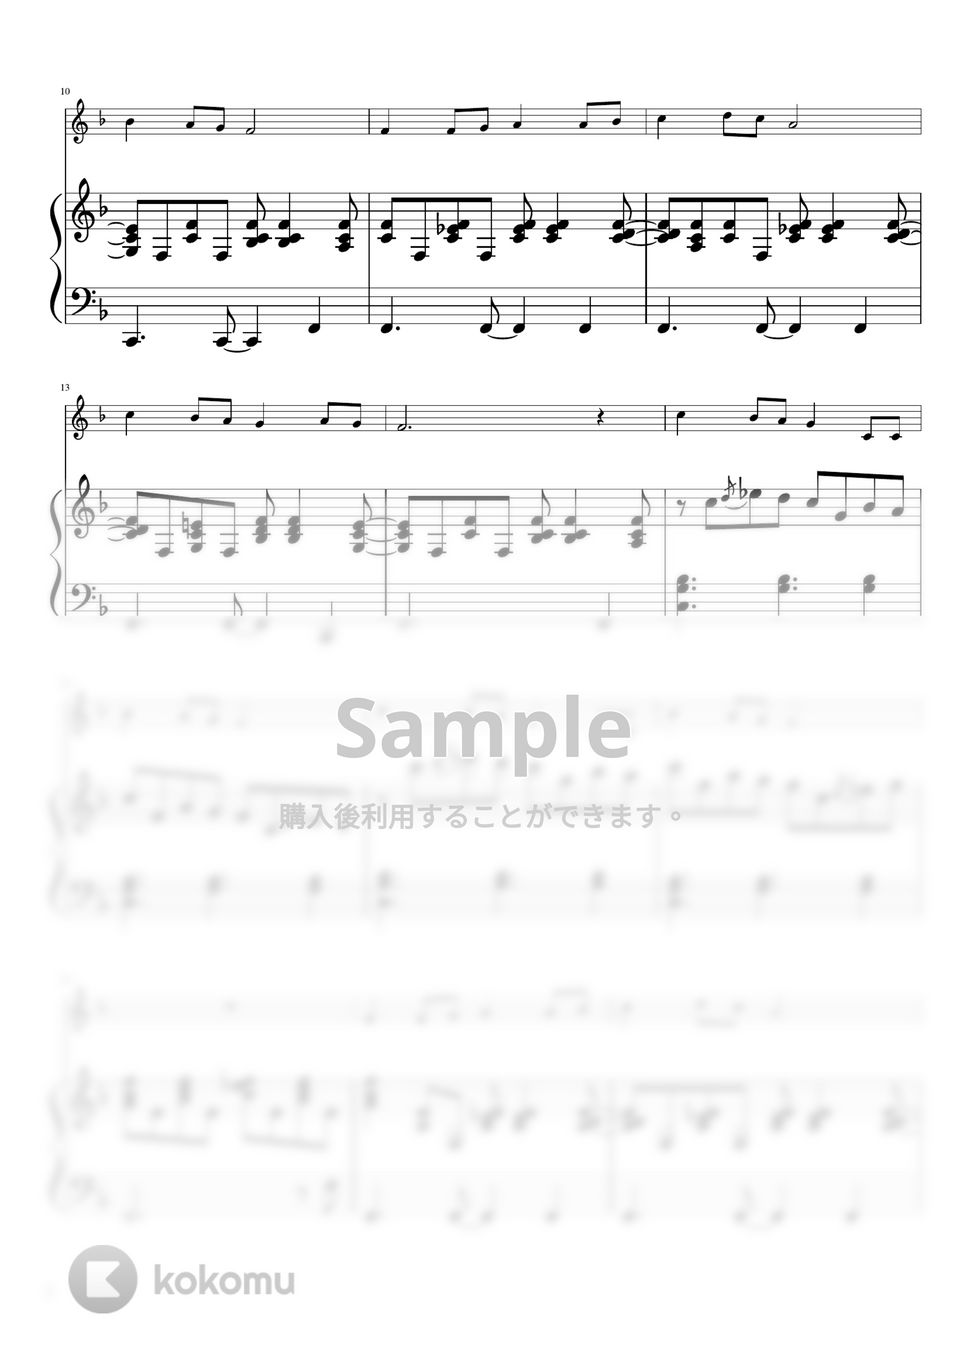 ロングロングアゴー (ボサノバ風　ピアノ＆楽器) by pfkaori